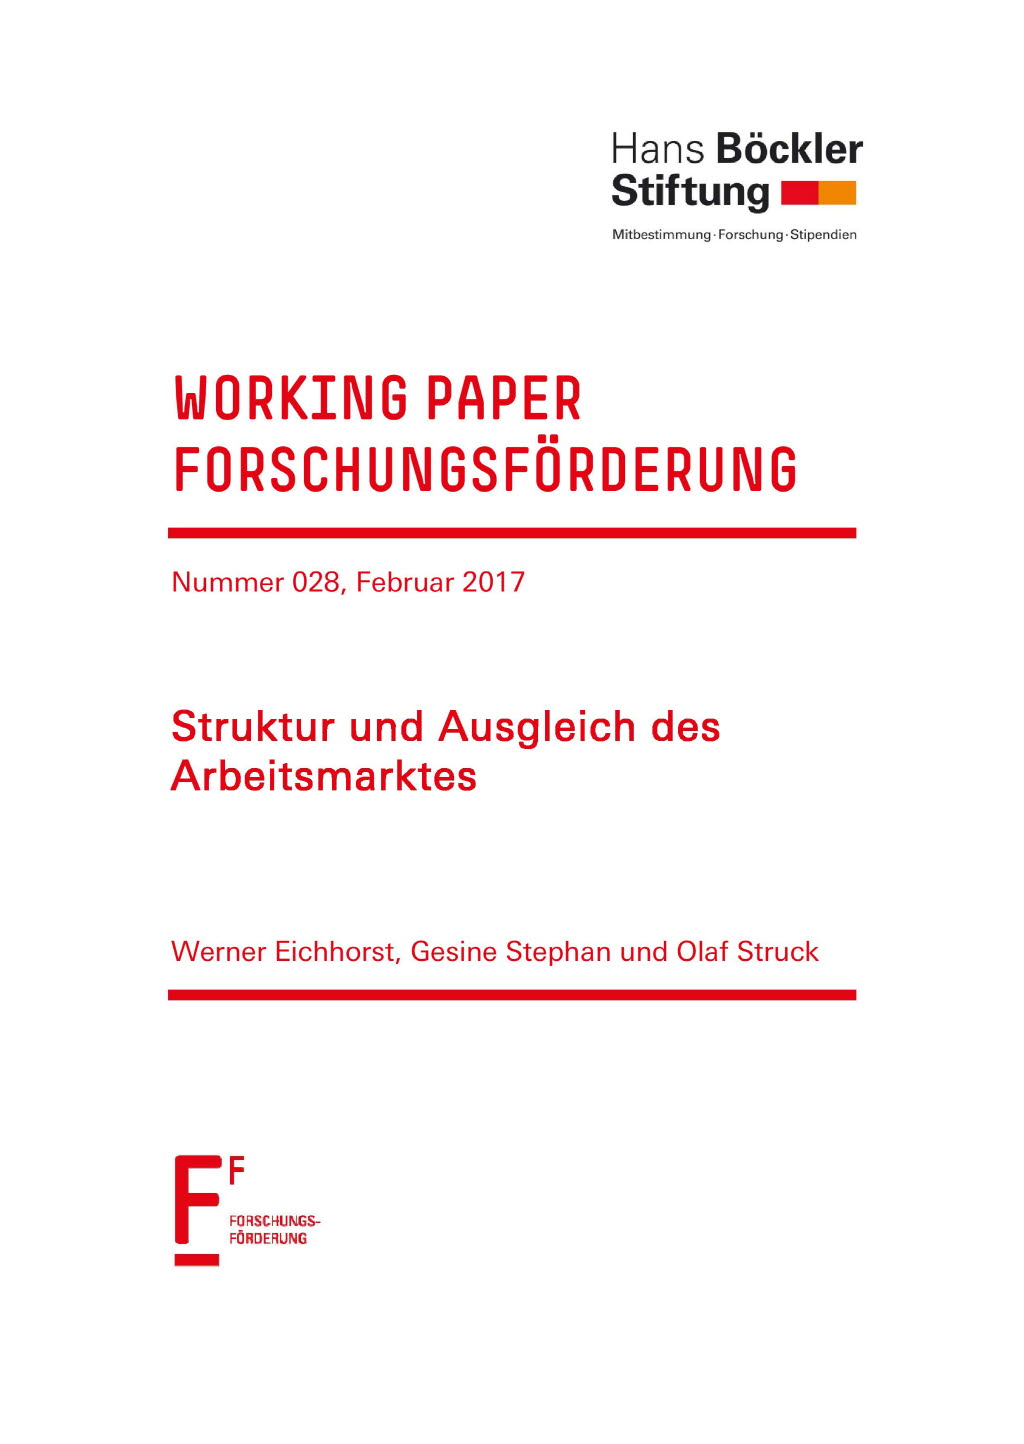 Struktur und Ausgleich des Arbeitsmarktes